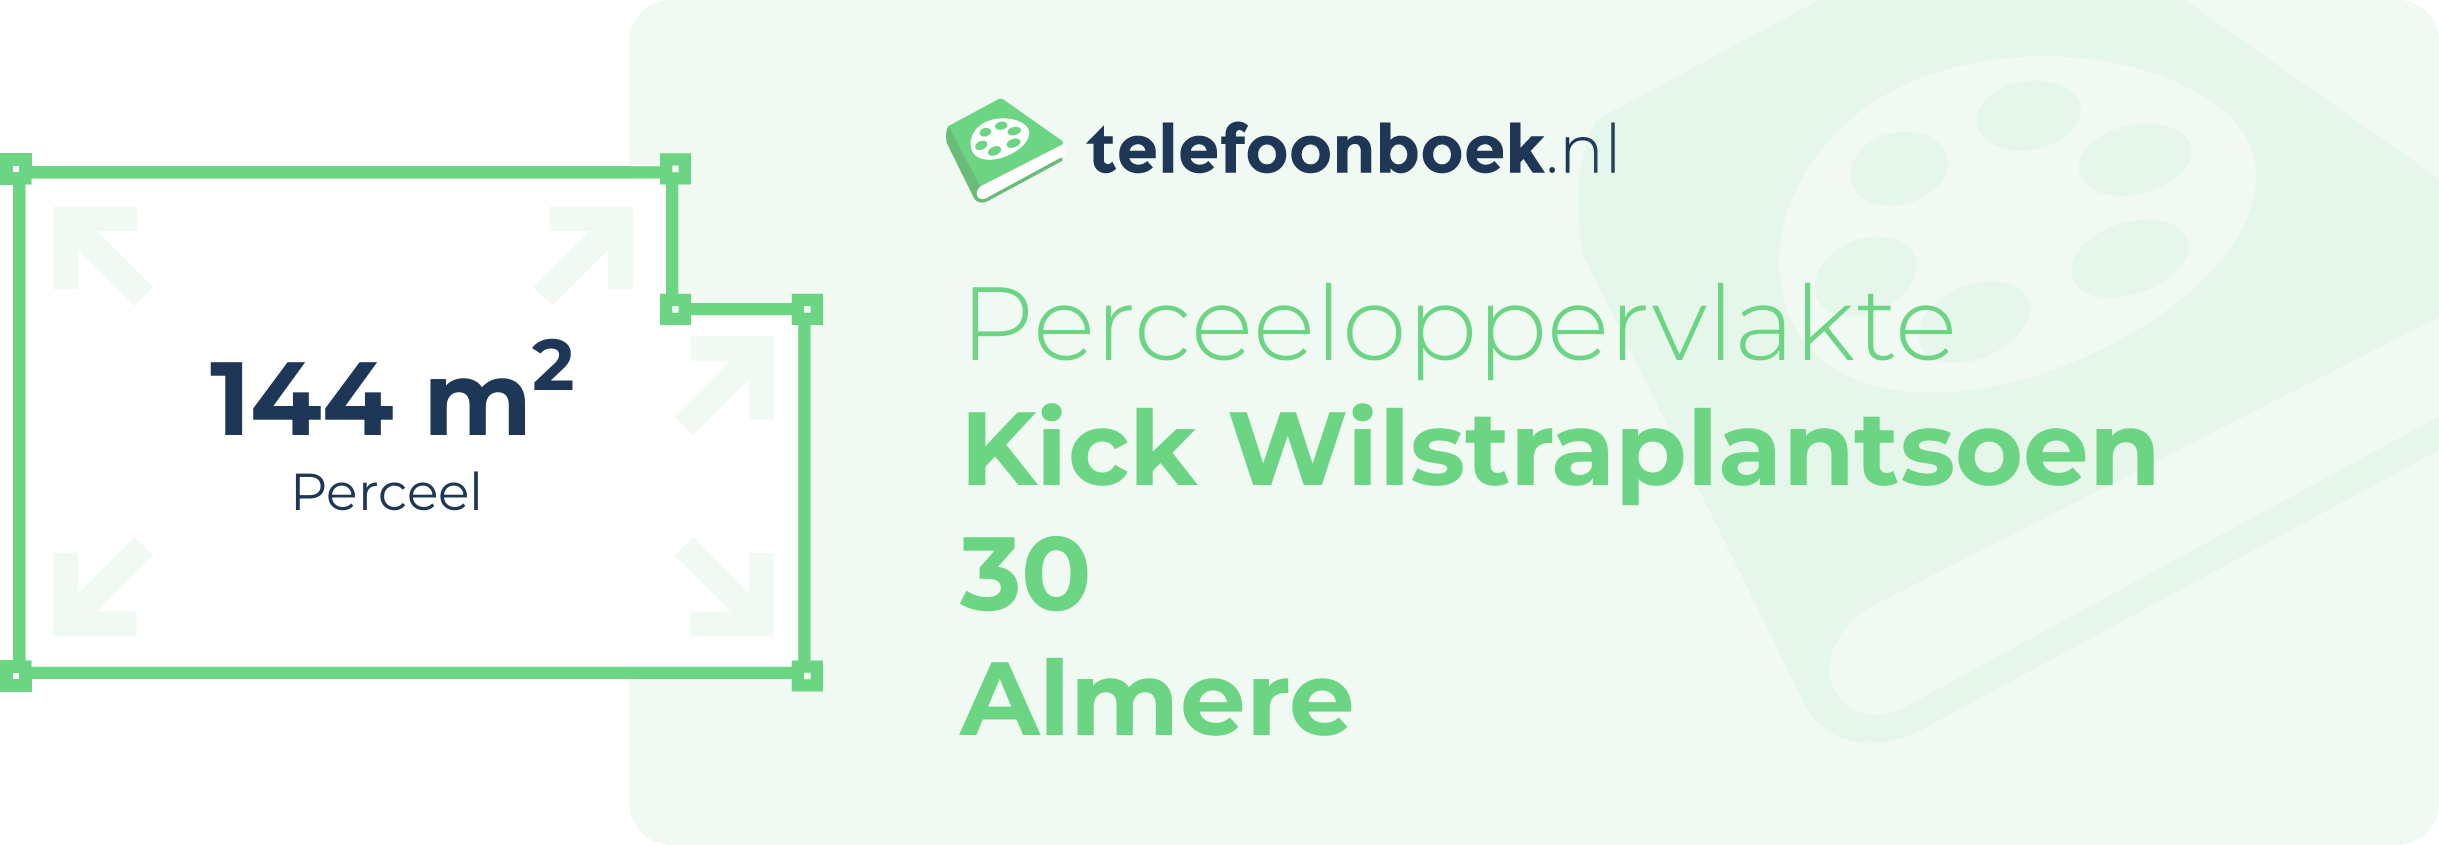 Perceeloppervlakte Kick Wilstraplantsoen 30 Almere